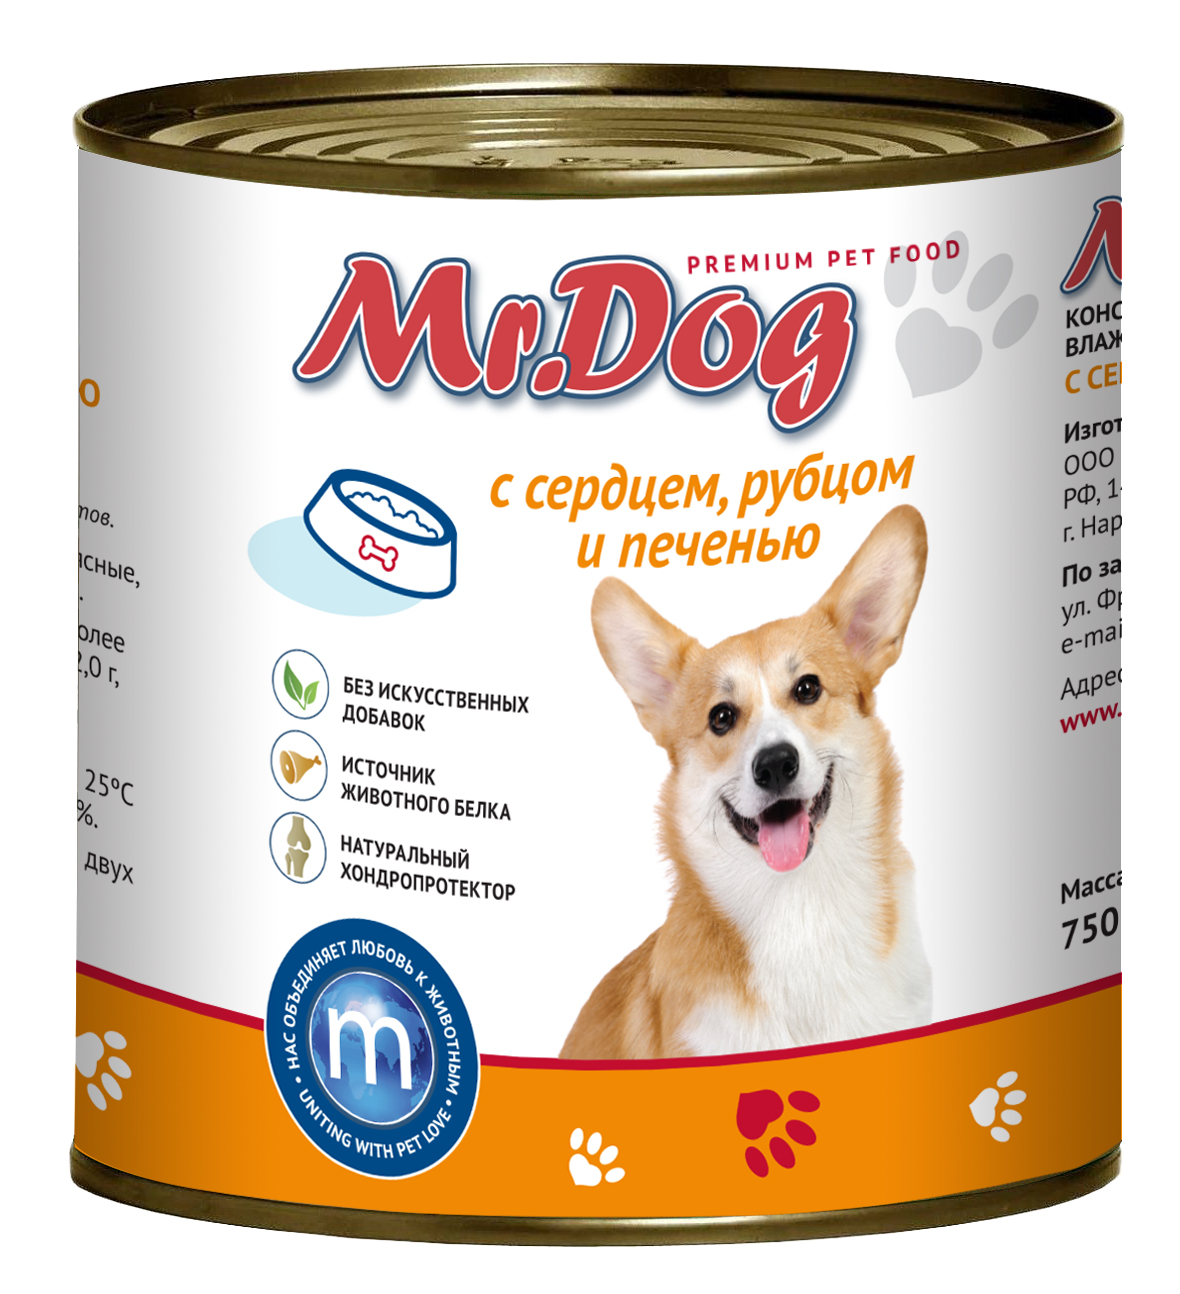 Консервы для собак MrDog, с сердцем, рубцом и печенью, 6 шт по 750 г